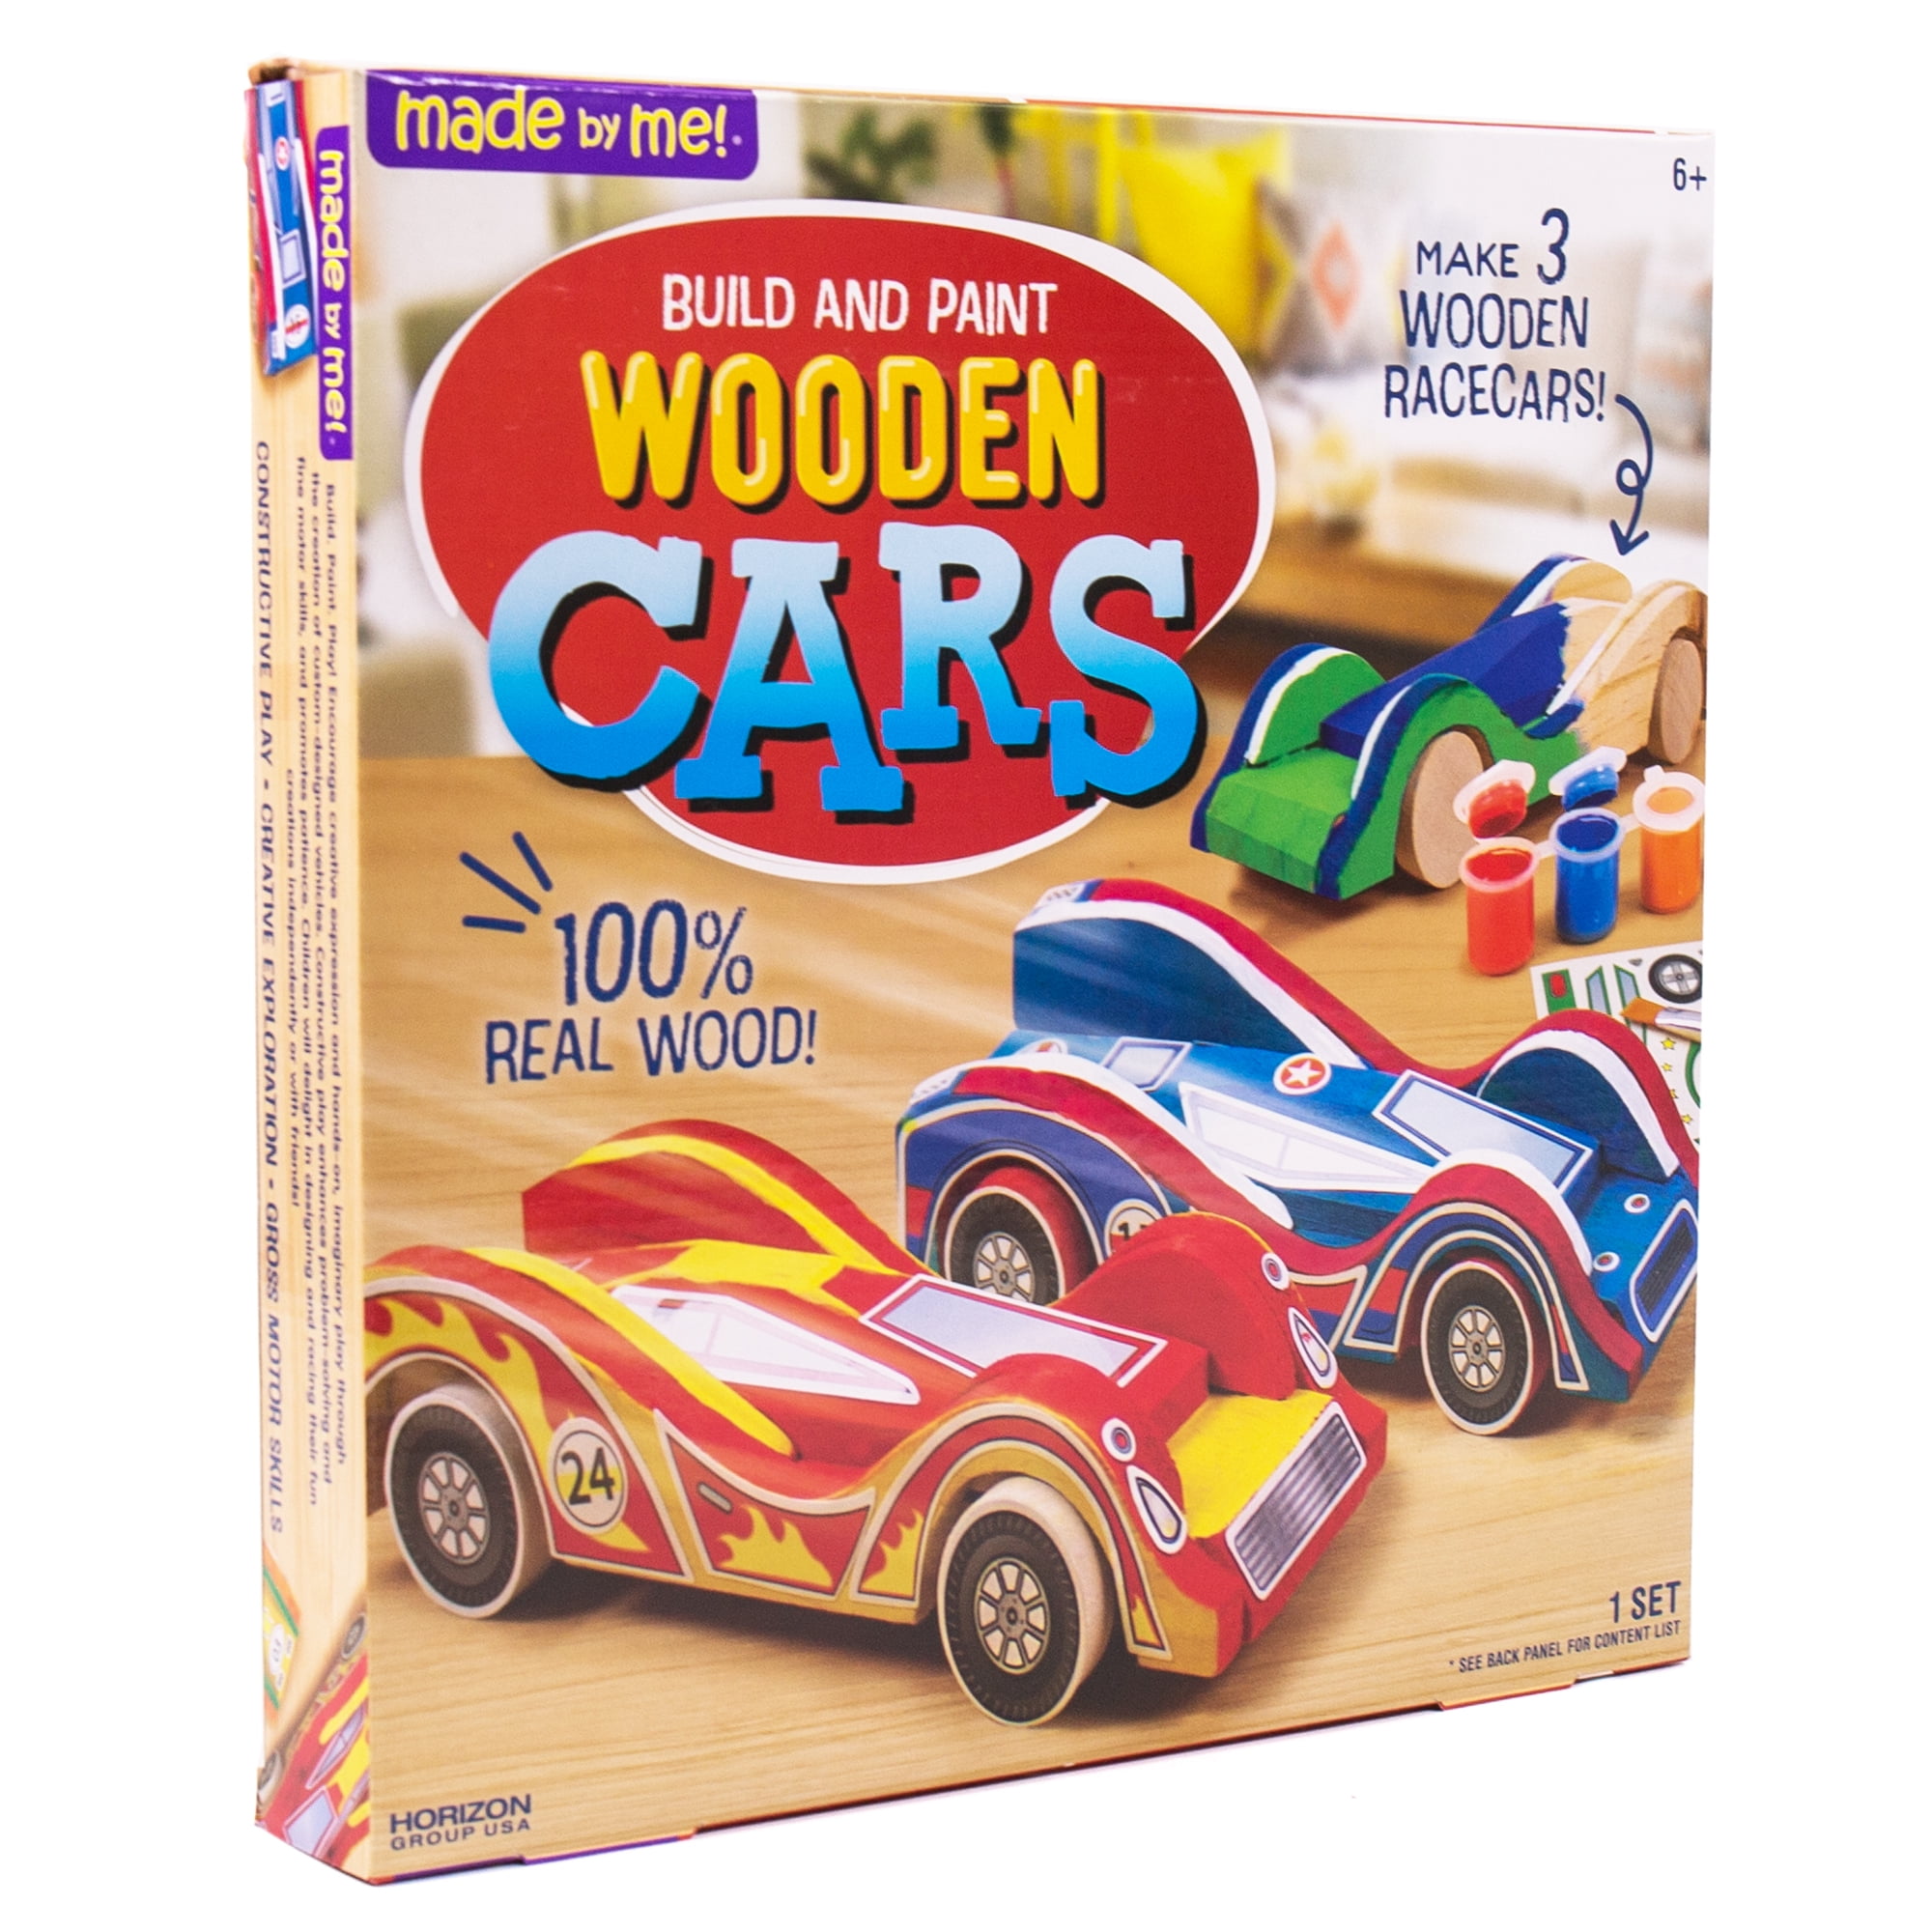 udeas car wooden model kit paint